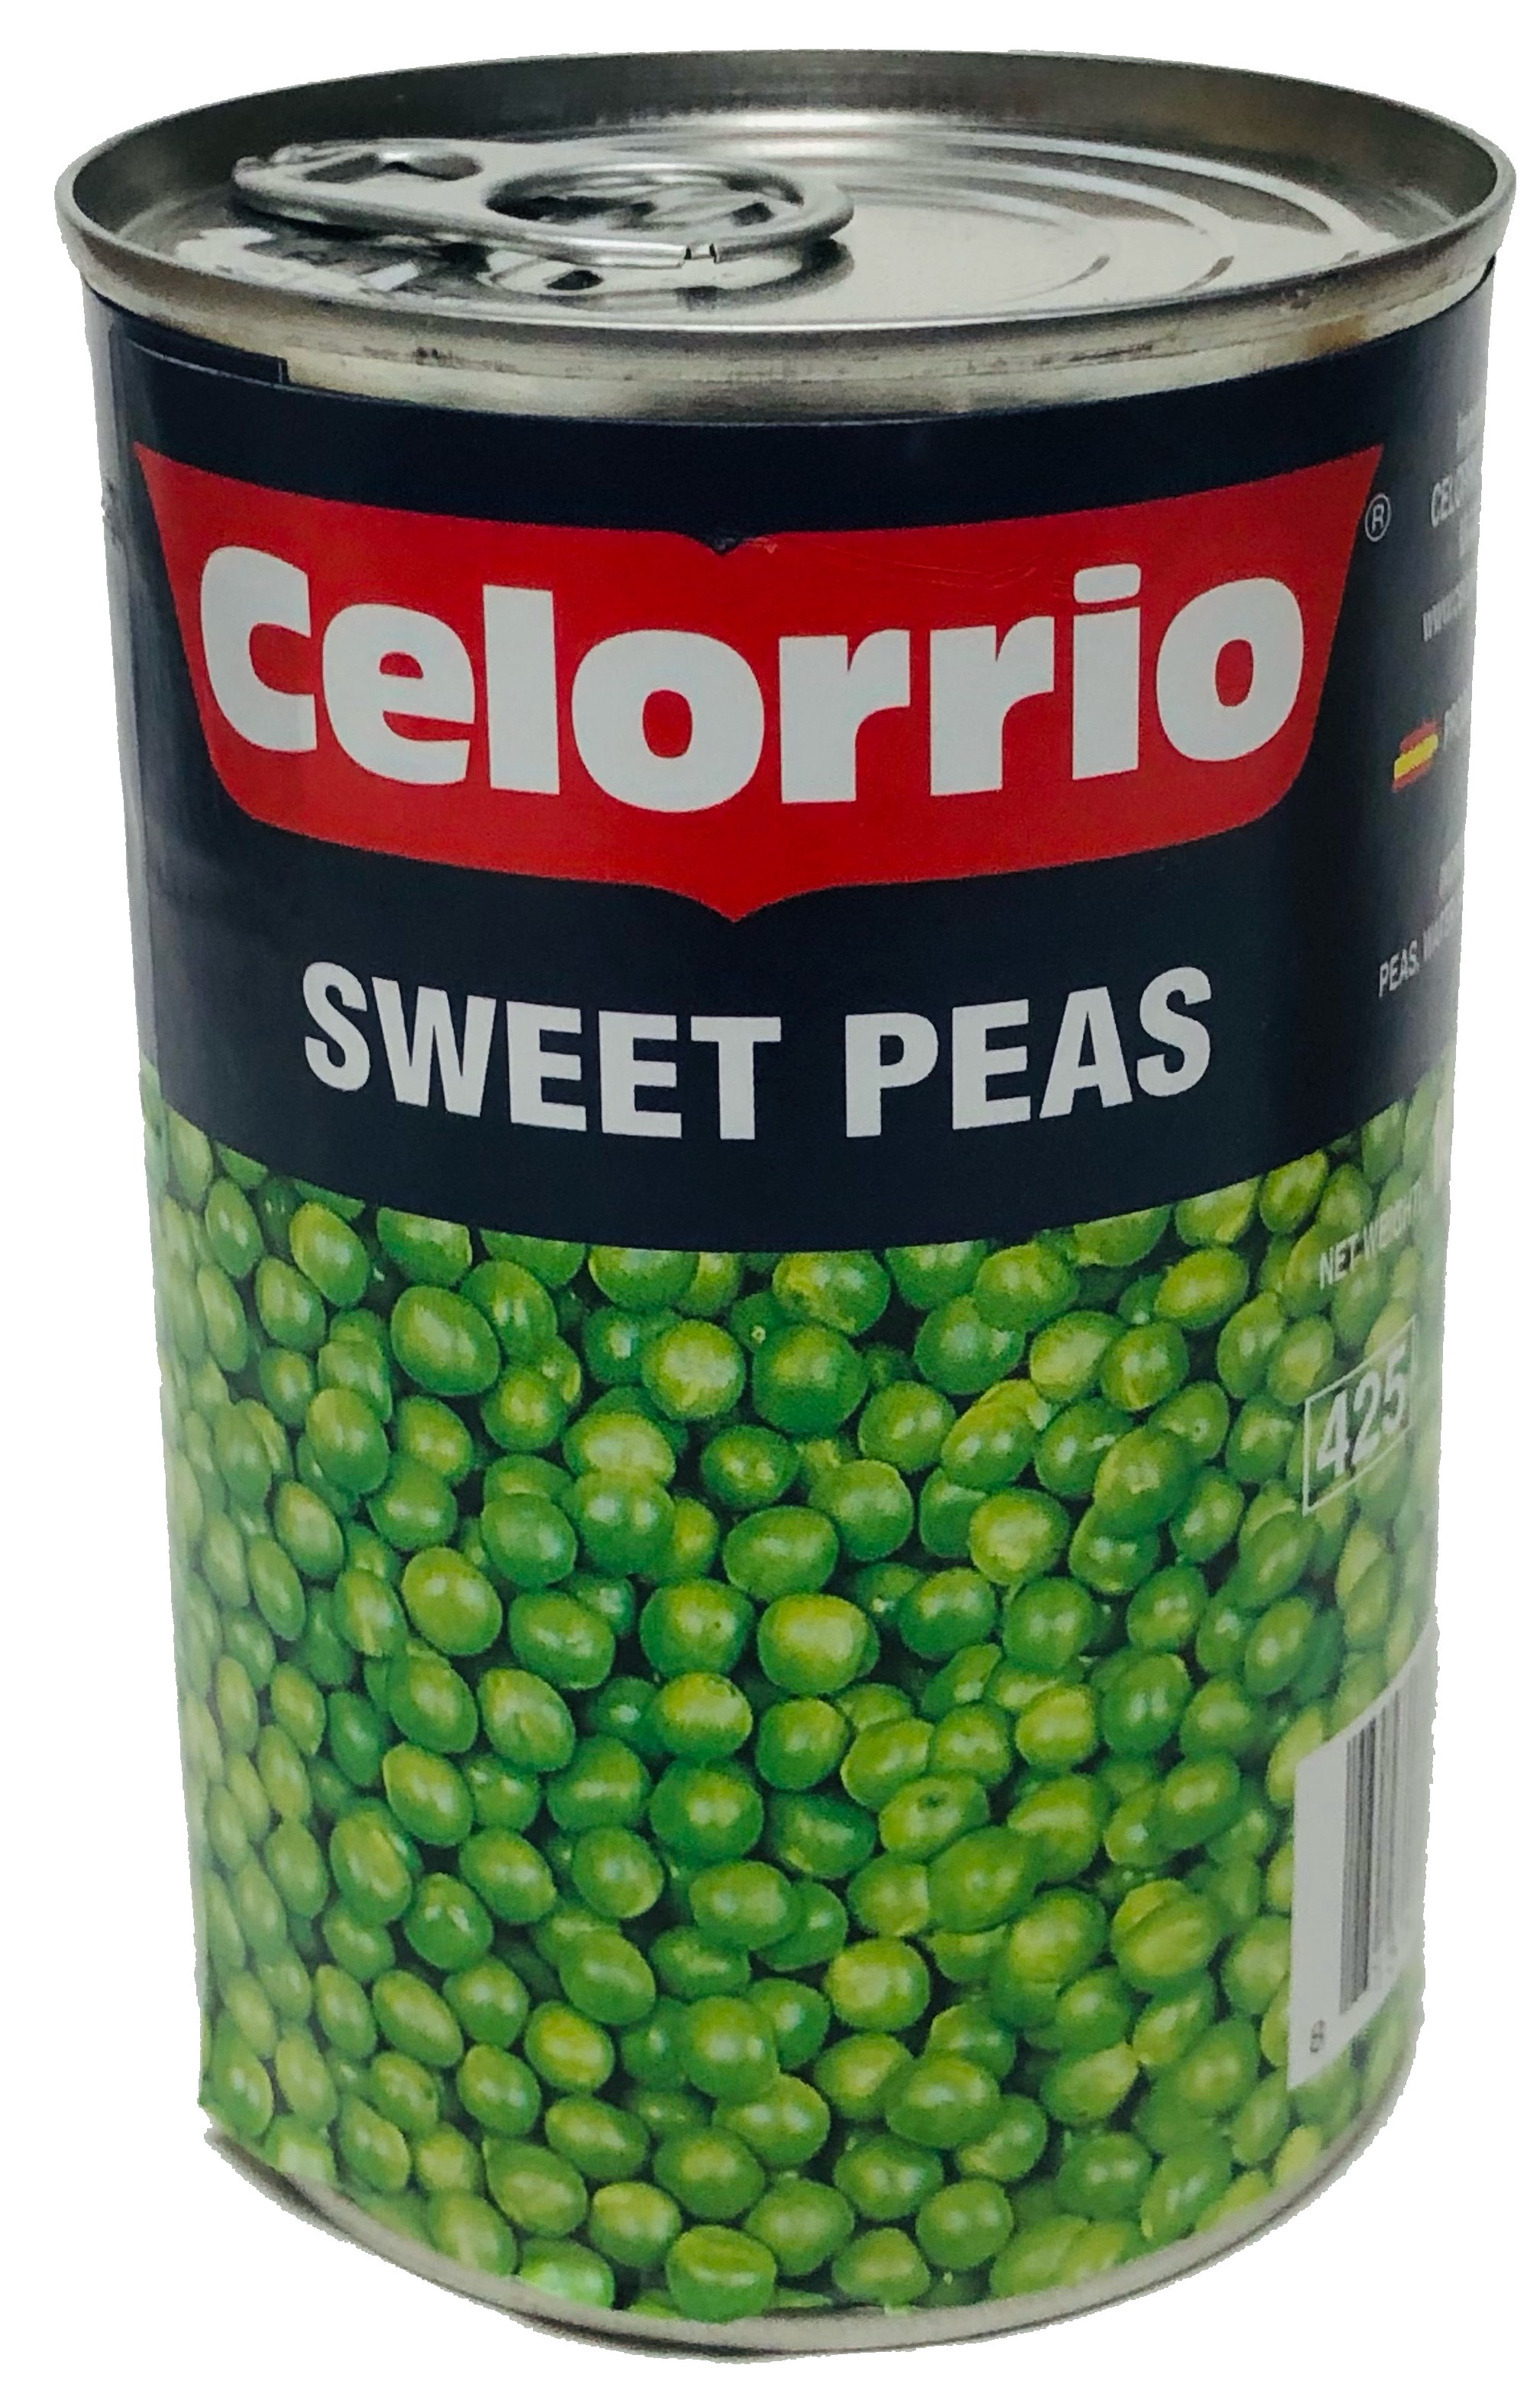 Celorrio Sweet Peas 15 oz